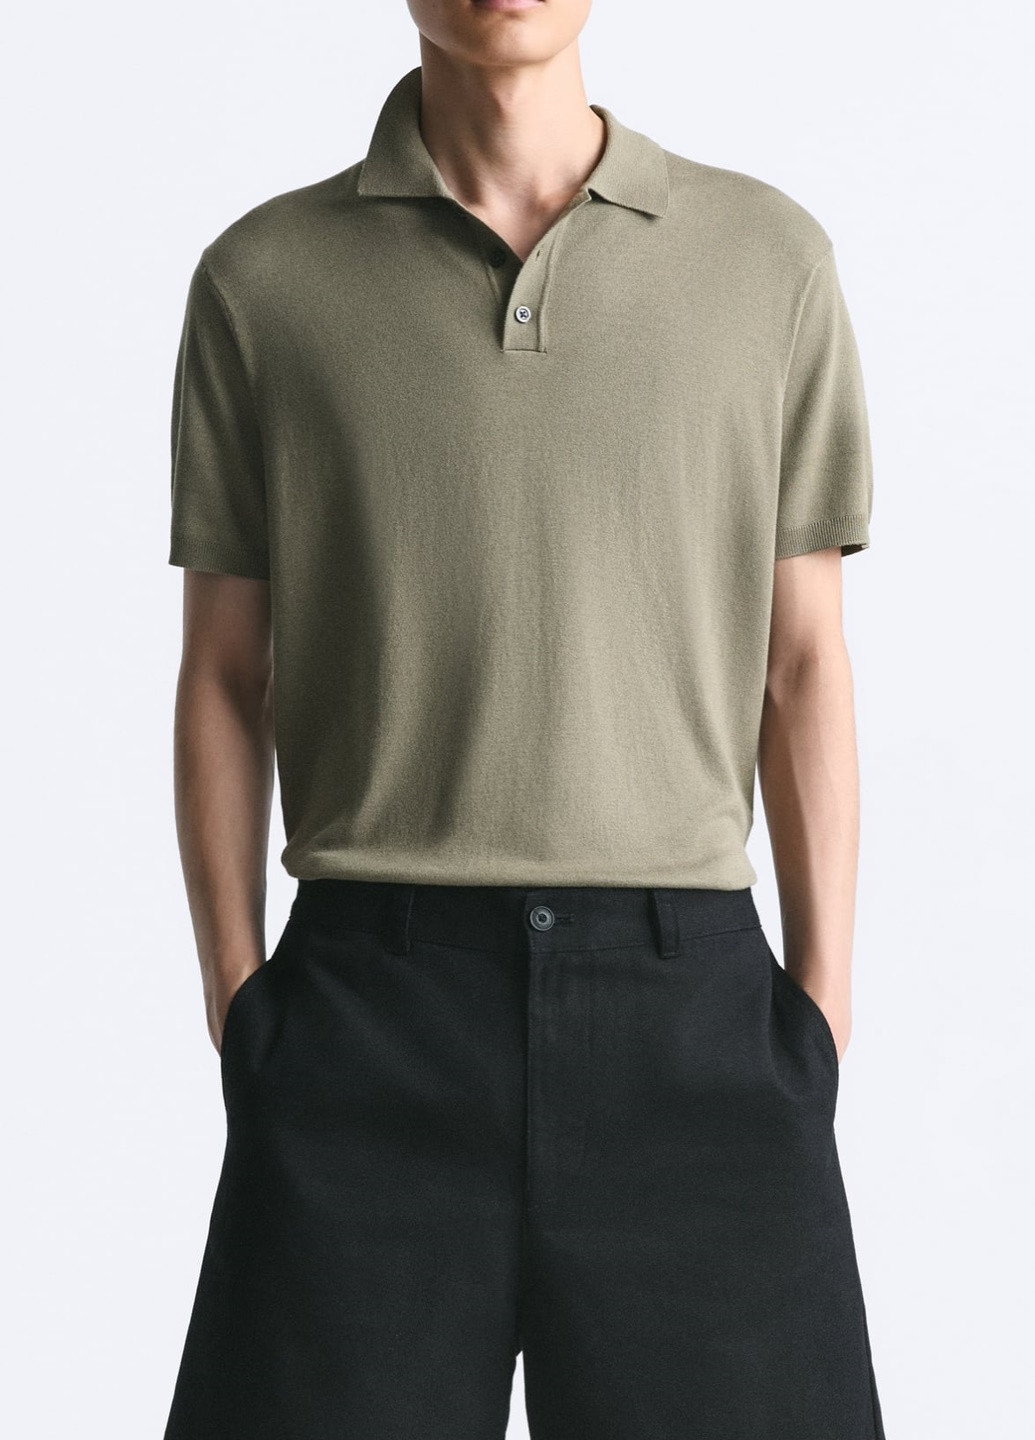 Оливковая (хаки) футболка-поло для мужчин Zara